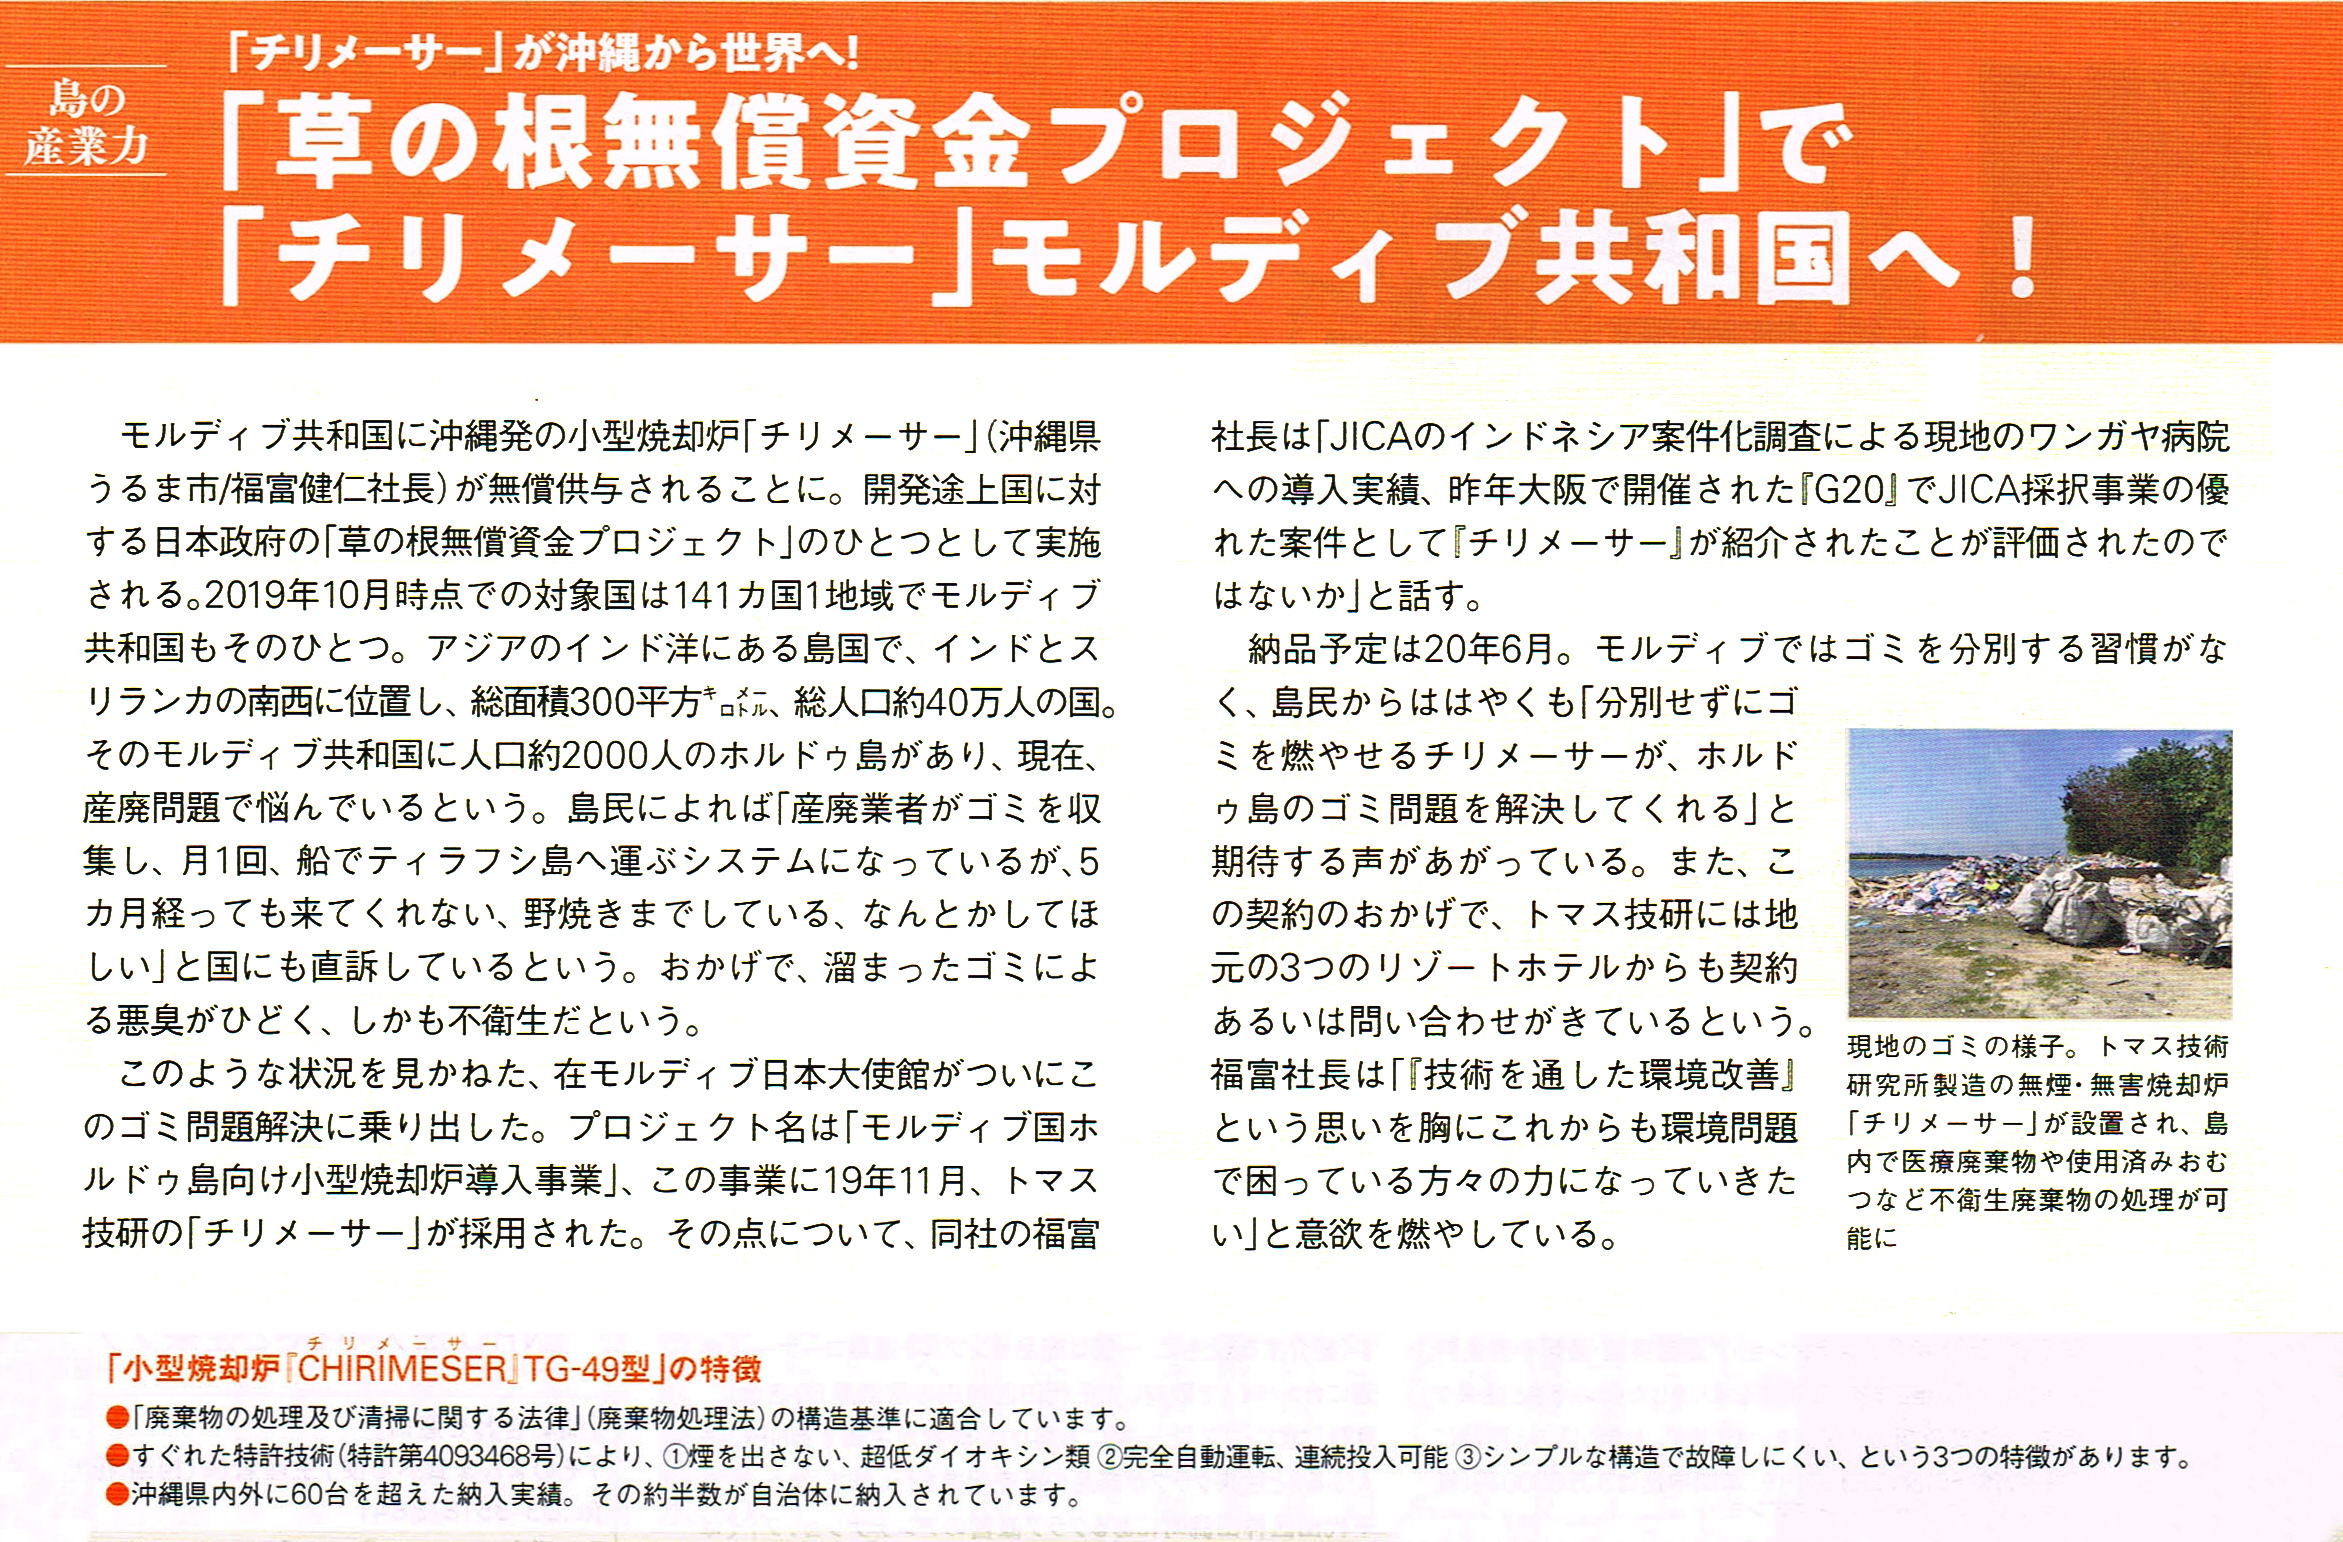 チリメーサー、モルディブ共和国へ! 日本政府の「草の根無償資金プロジェクト」に採用 | トマス技術研究所